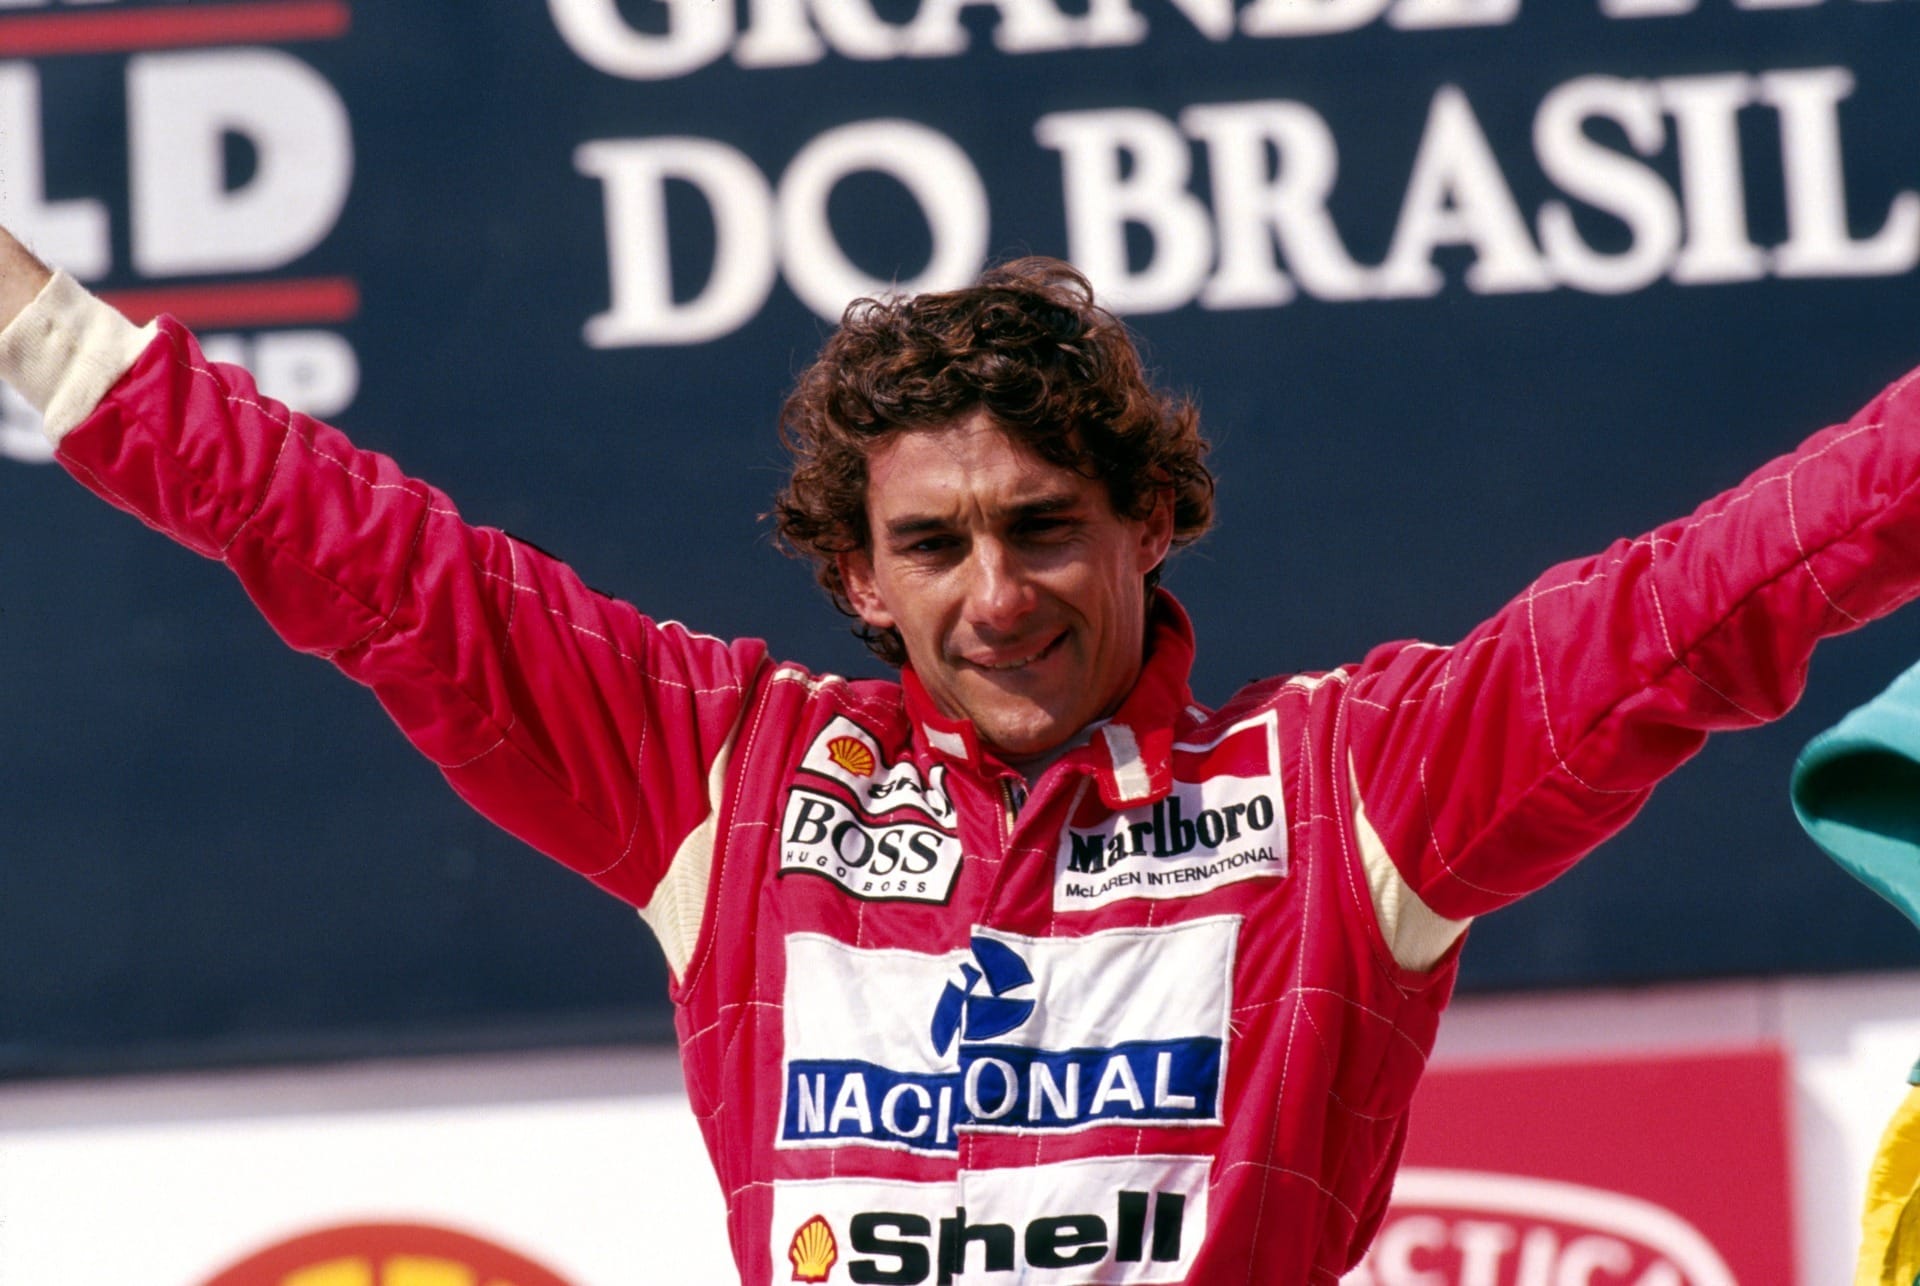 Ayrton Senna influencia gerações 30 anos após morte: 'Brasil que dava certo'